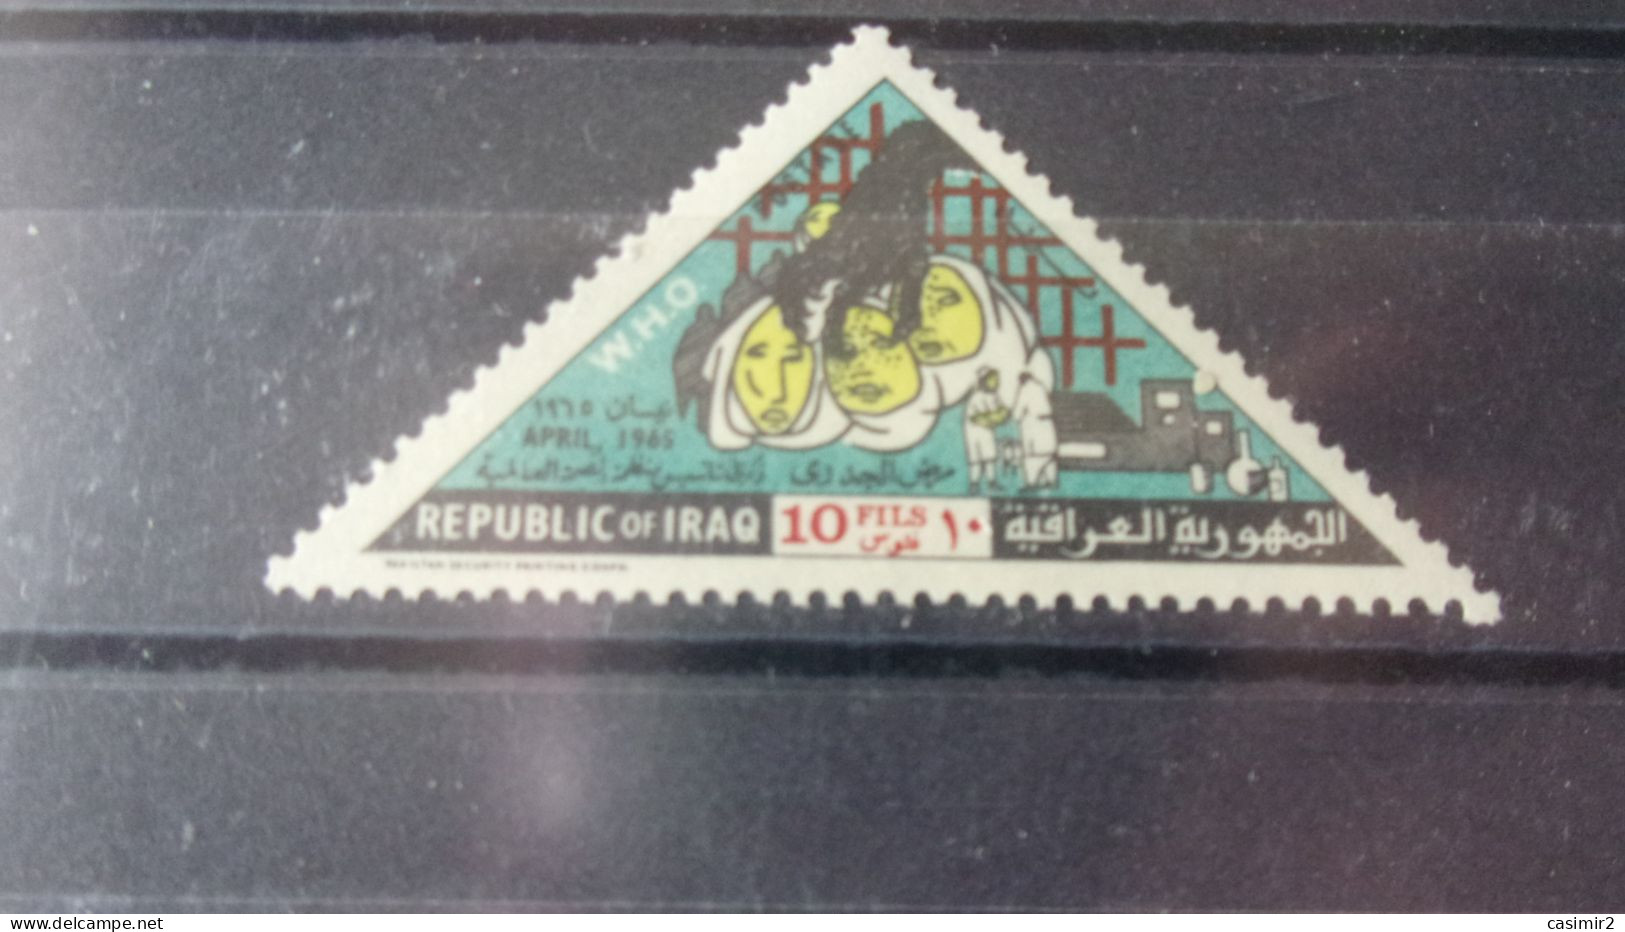 IRAQ YVERT N°409** - Irak